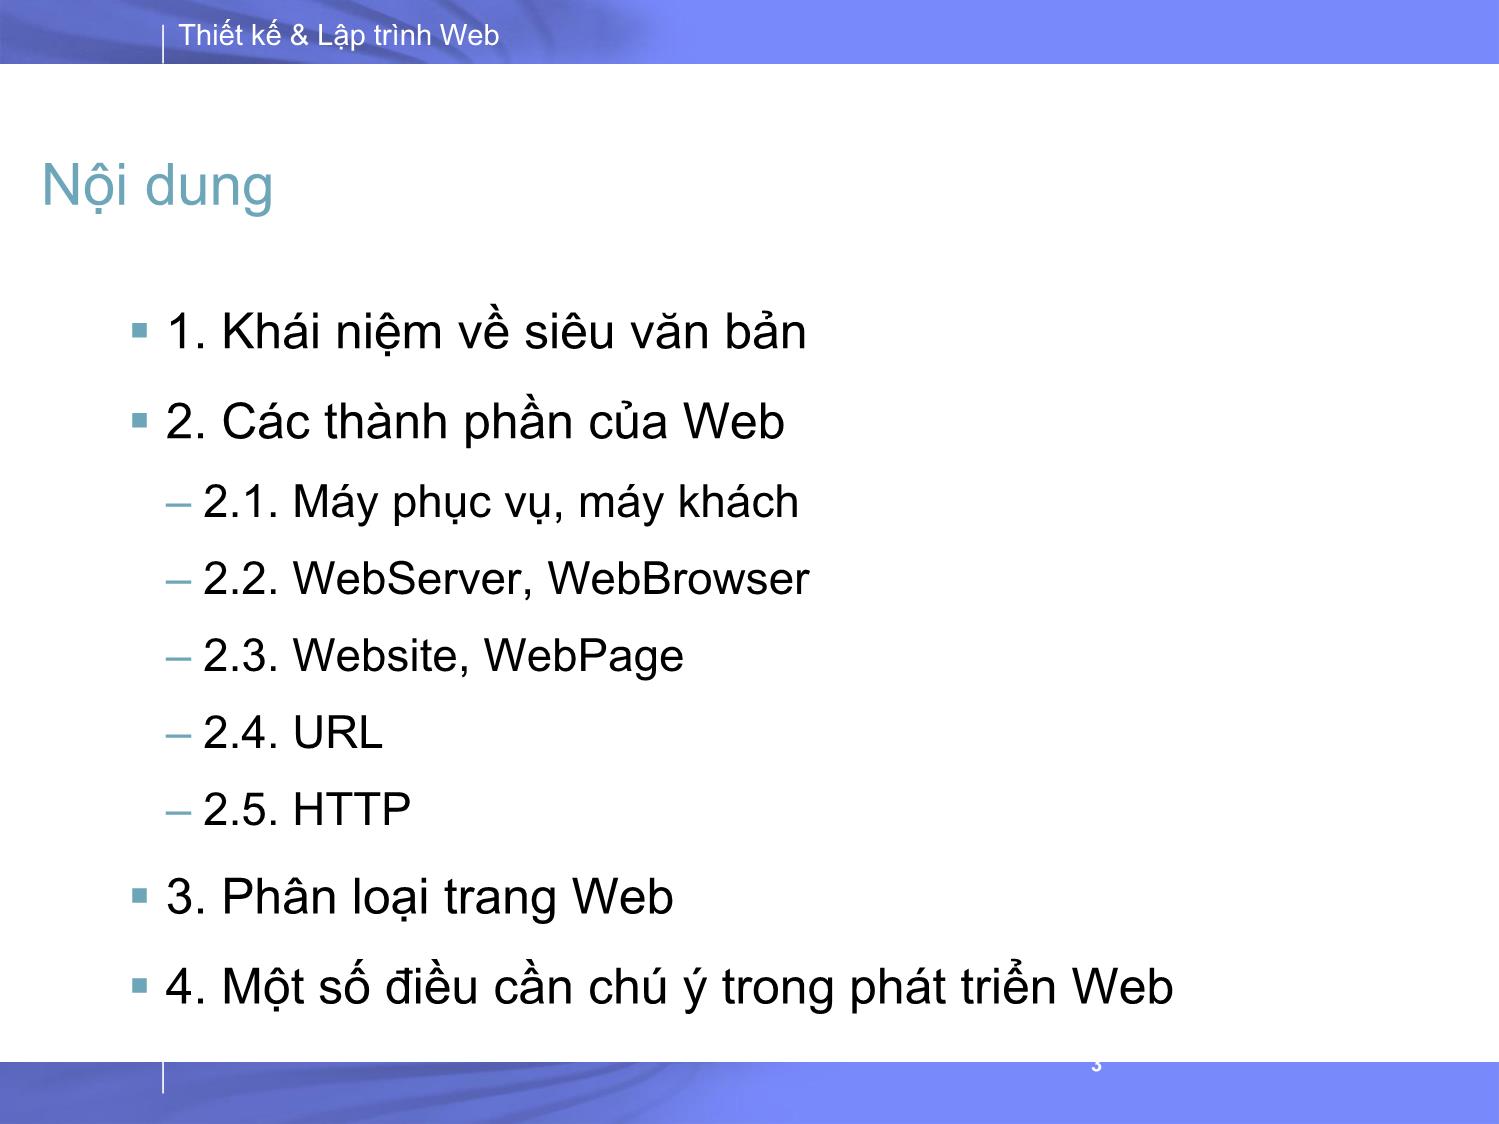 Bài giảng Thiết kế và lập trình Web - Bài 1: Tổng quan về Thiết kế và lập trình Web trang 3